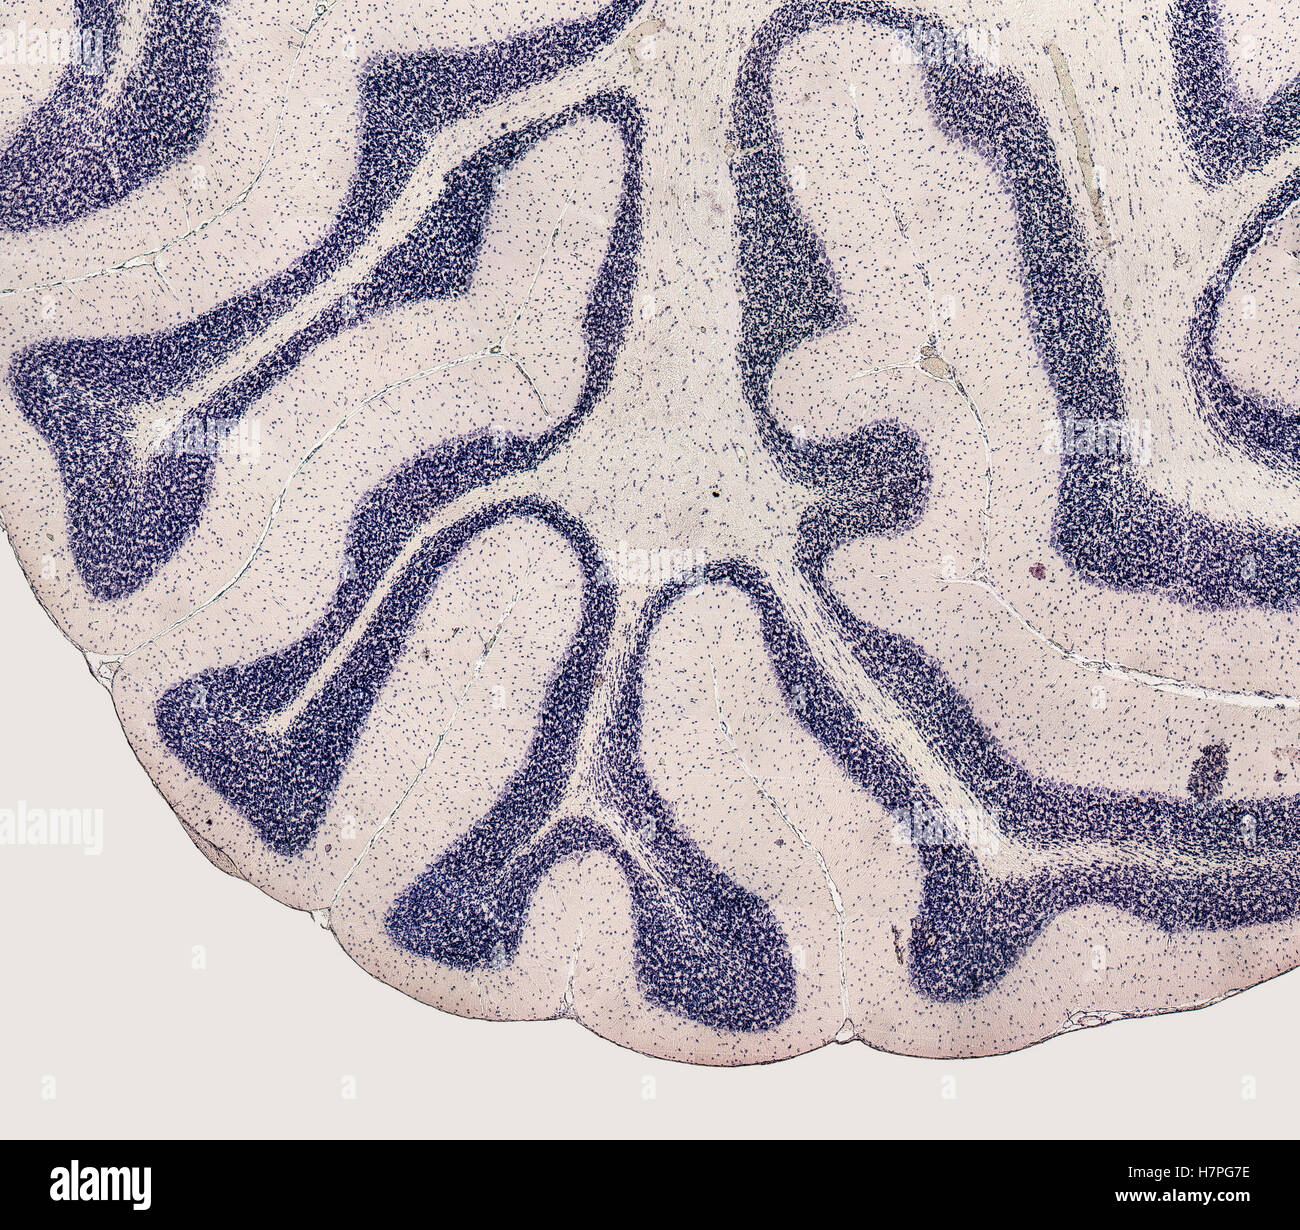 mikroskopischen Detail zeigt das Gehirn einer Ratte Stockfoto